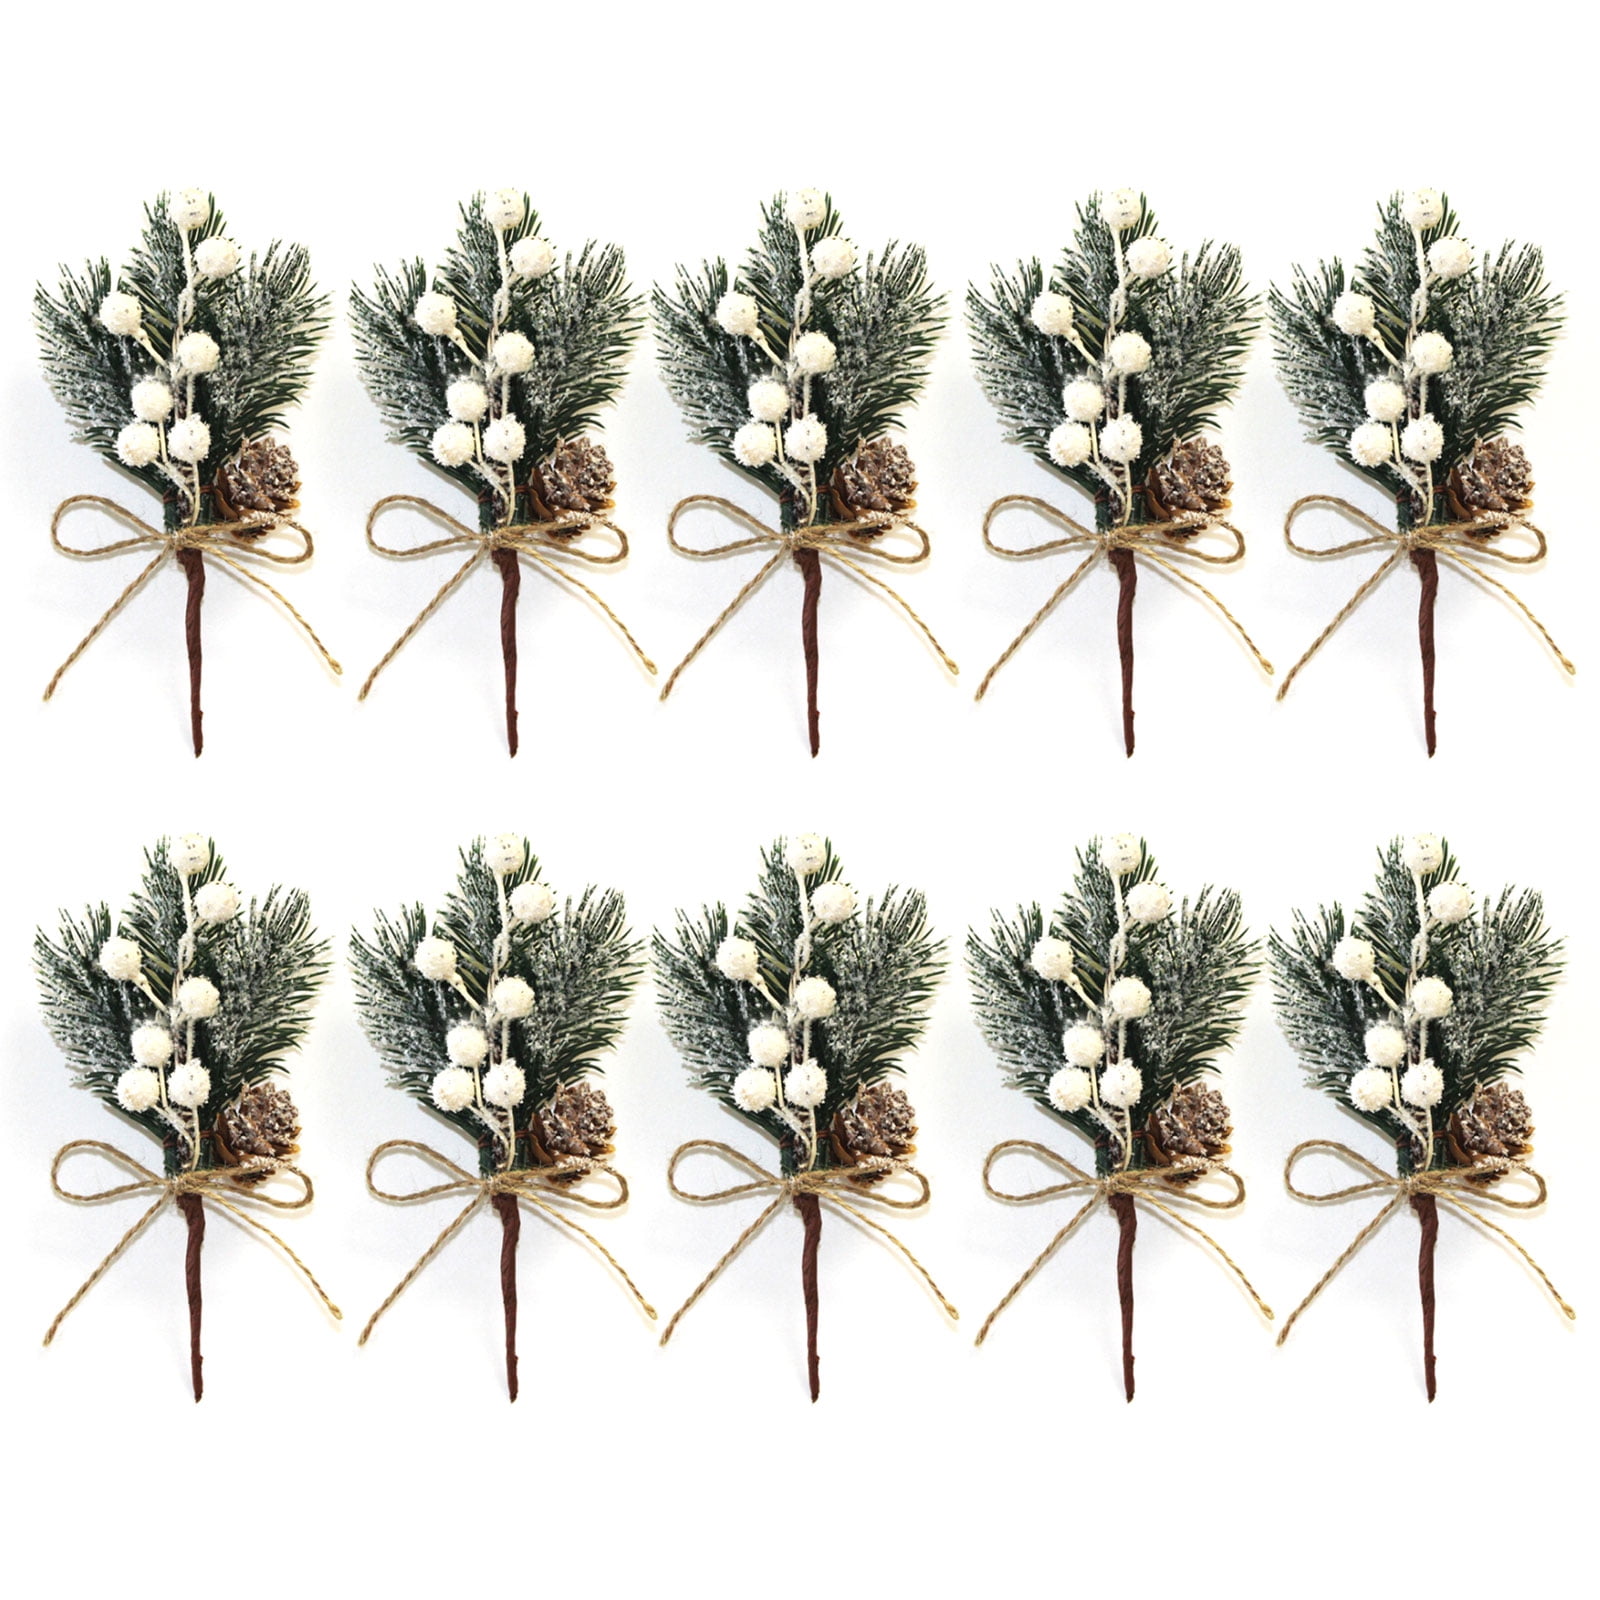 10 Pcs PIP Berry Stem For Wreath Floral Arrangement Craft Christmas DecoraPP 